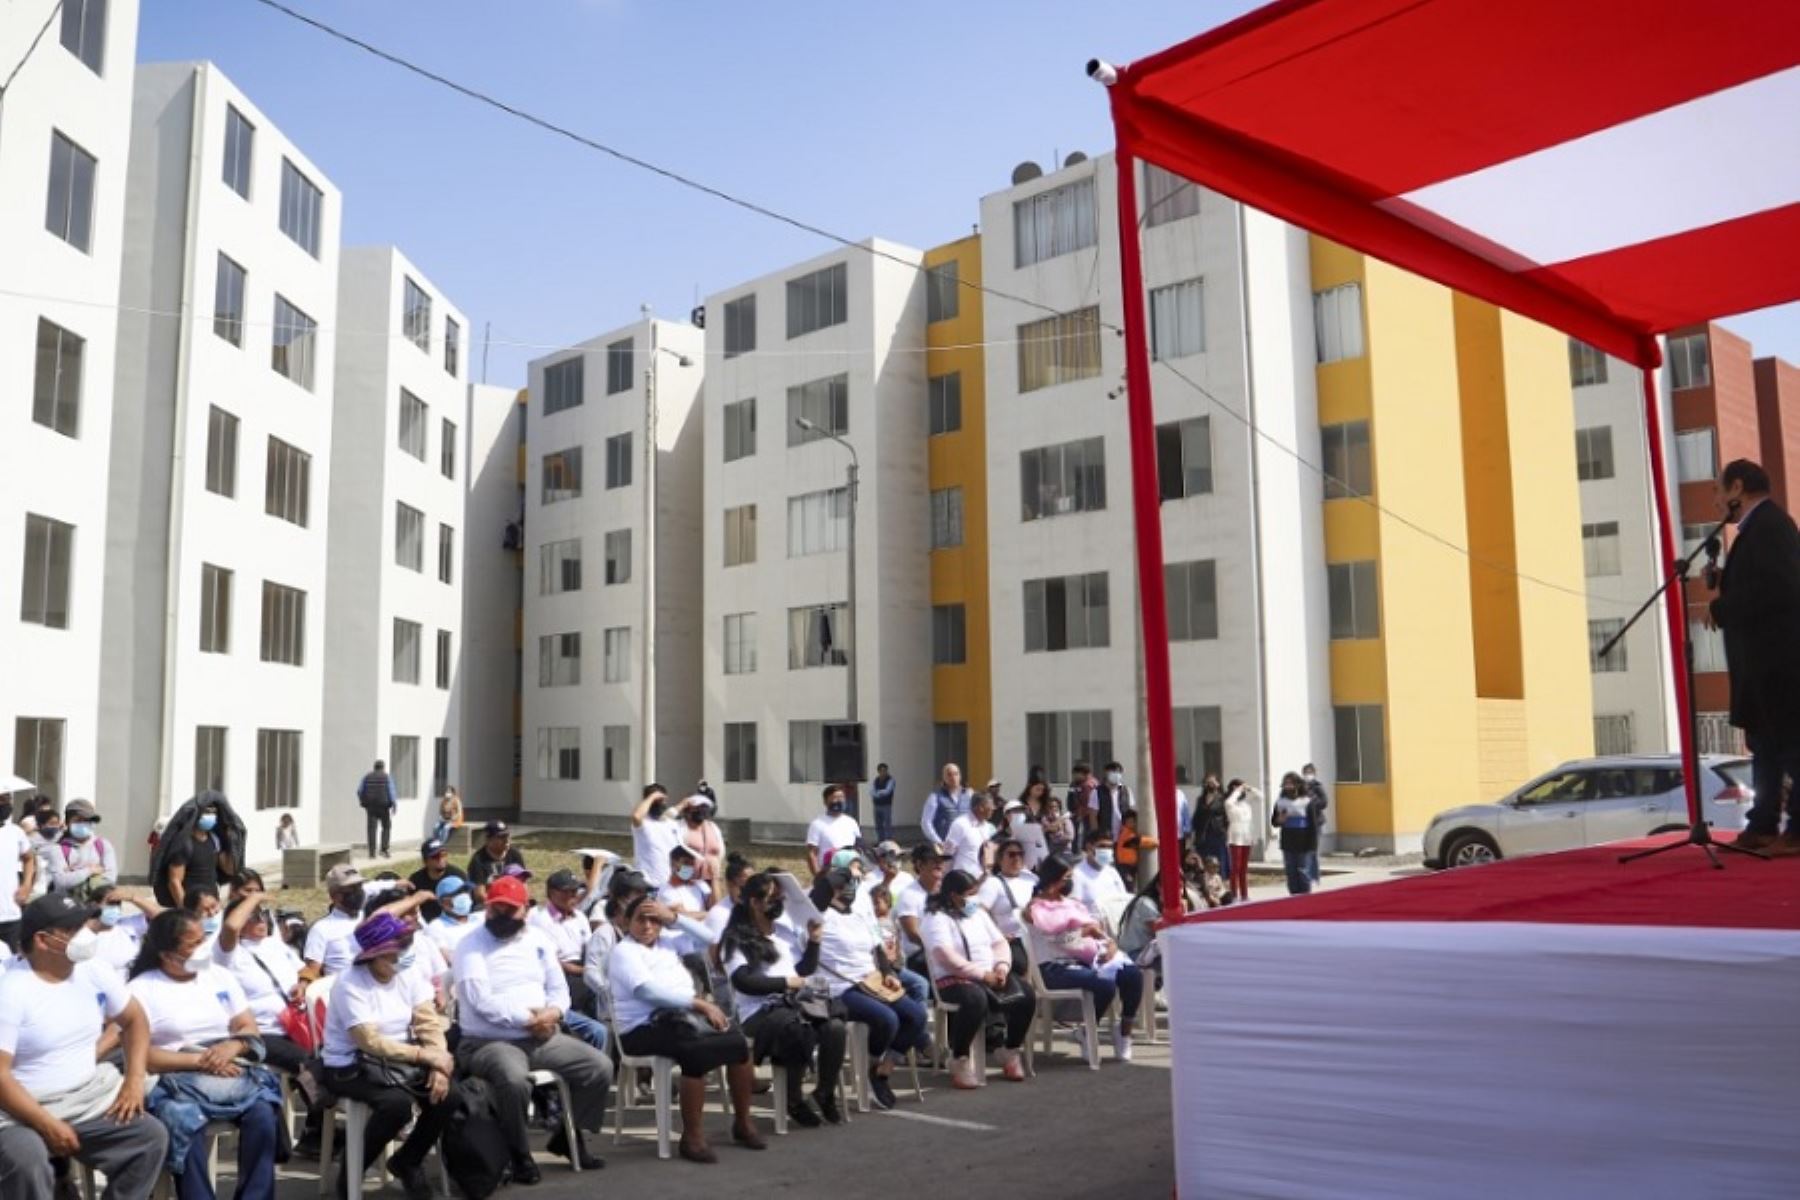 El Ministerio de Vivienda, Construcción y Saneamiento entregó 120 viviendas de interés social del proyecto inmobiliario “Cuatro suyos”, en el distrito de La Esperanza, en el departamento de La Libertad.